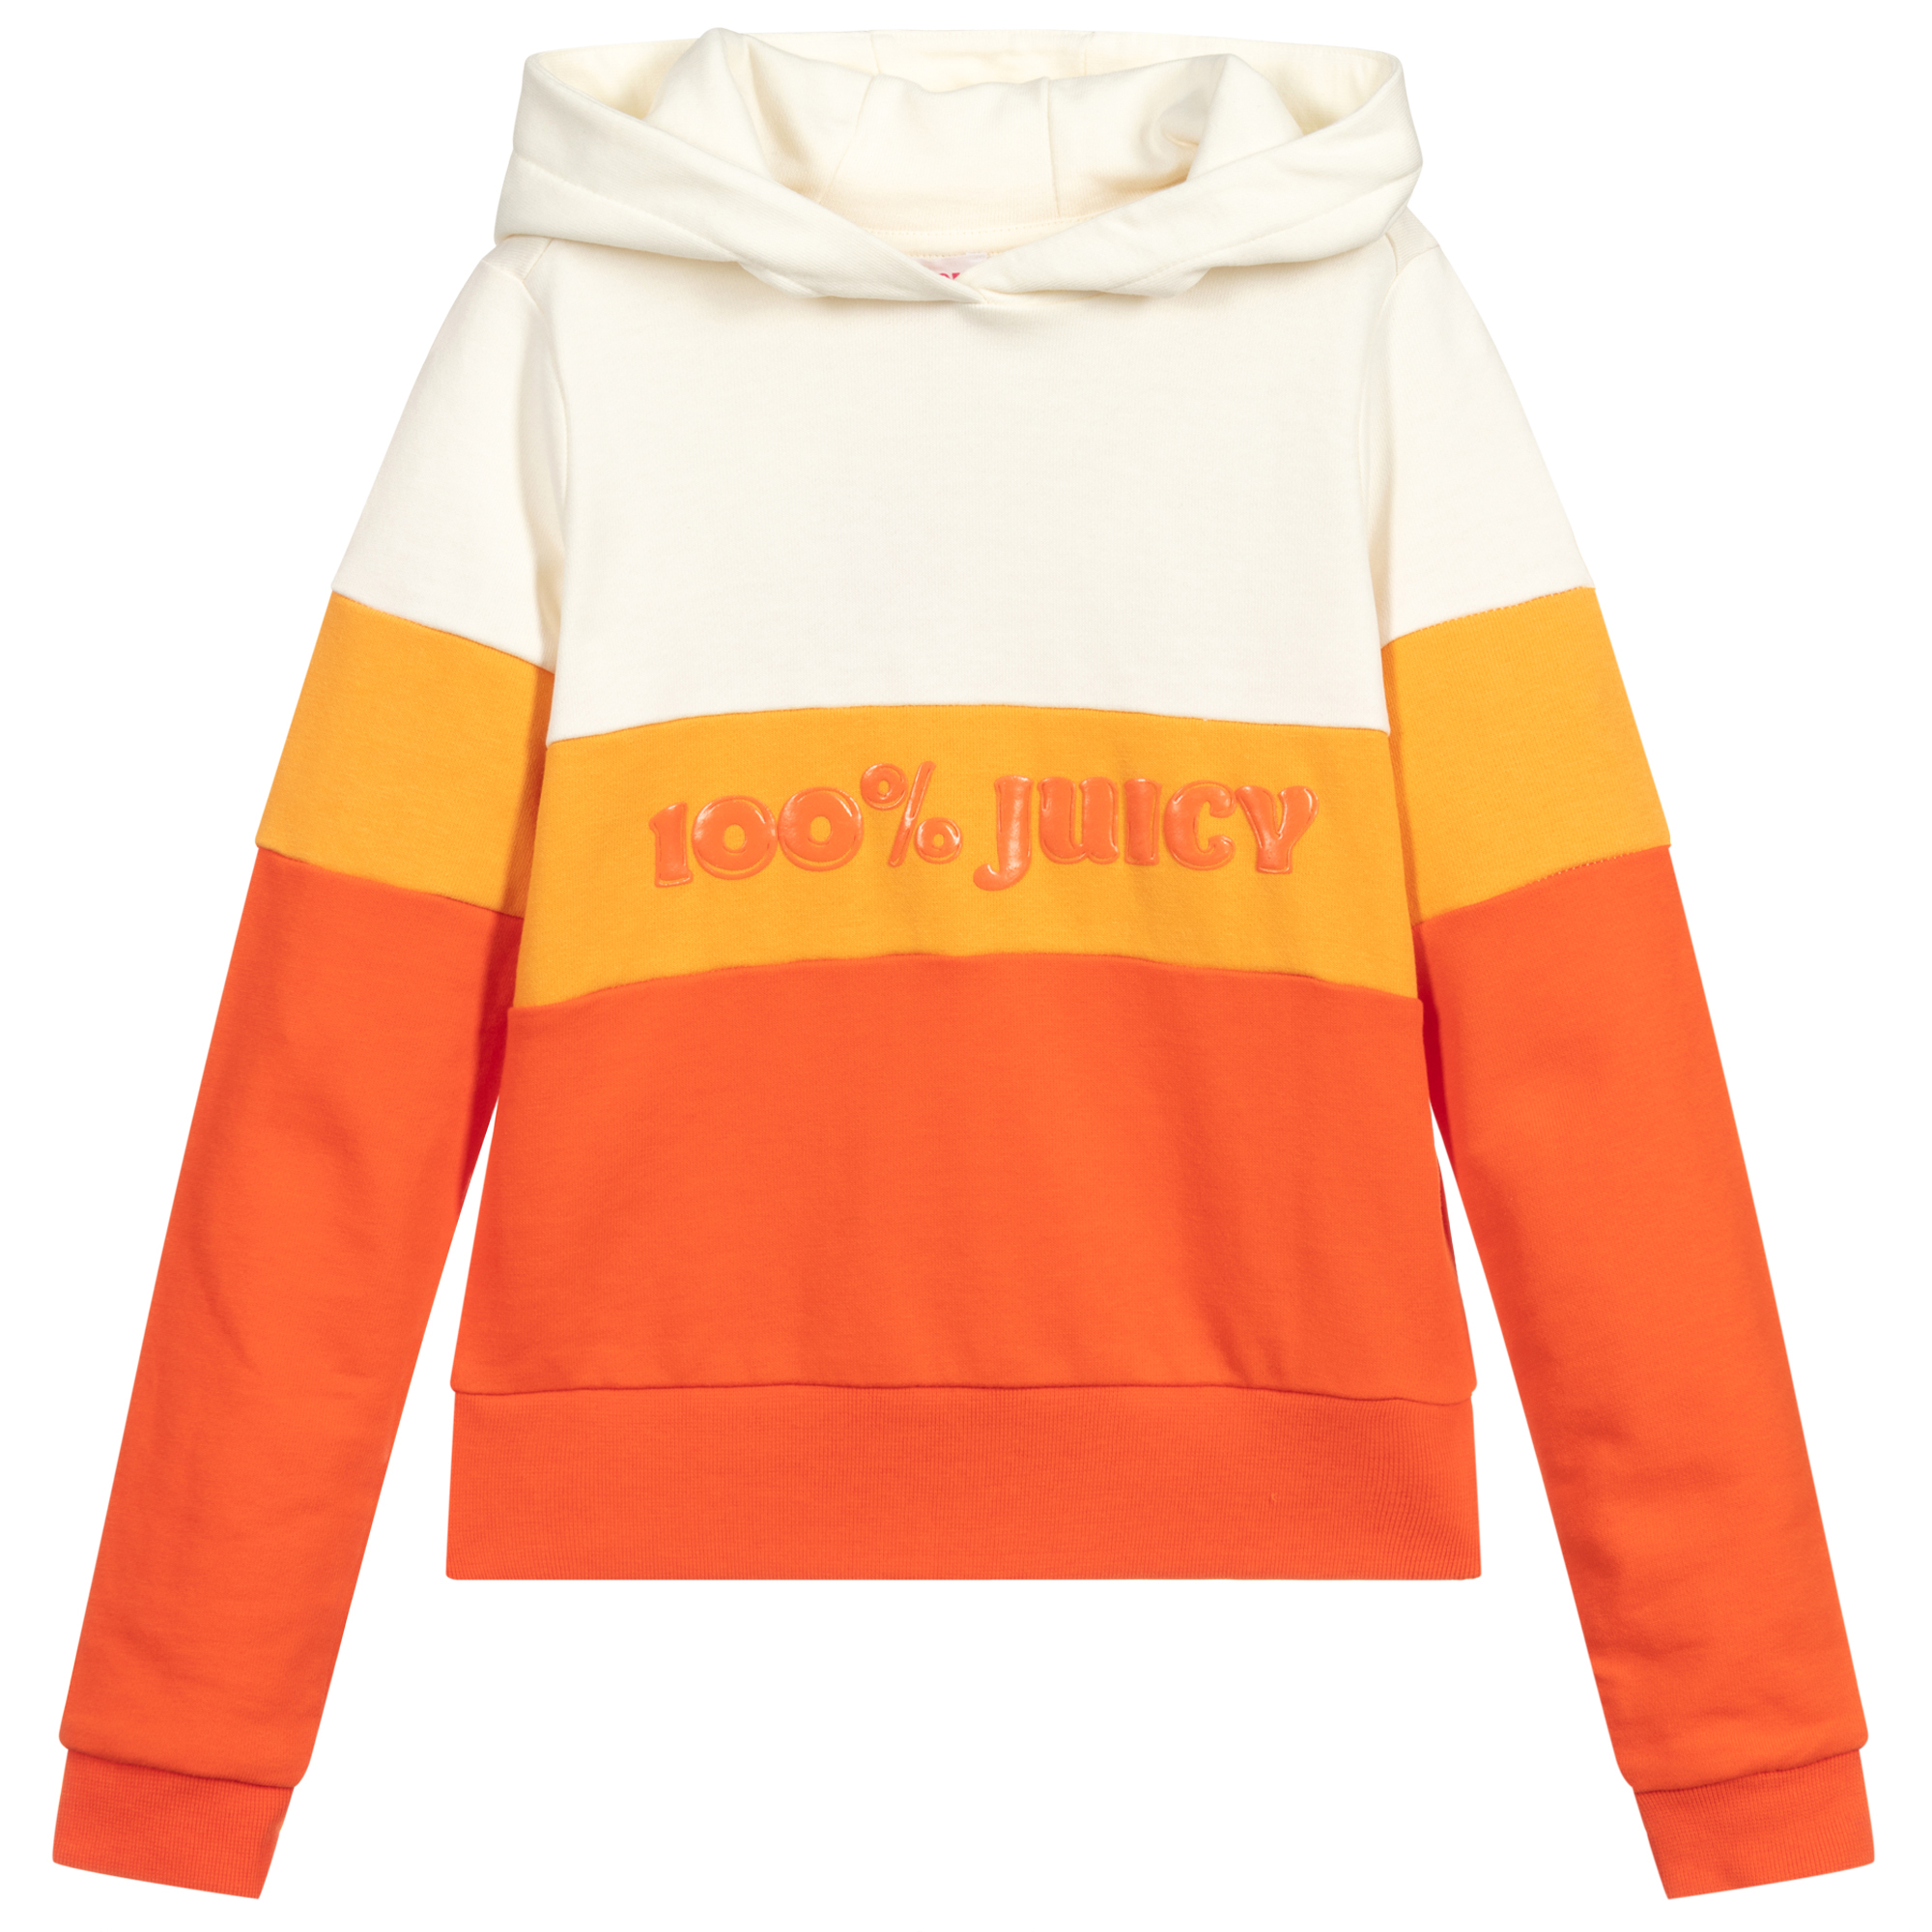 Juicy Couture - Girls Orange Logo Crop Top